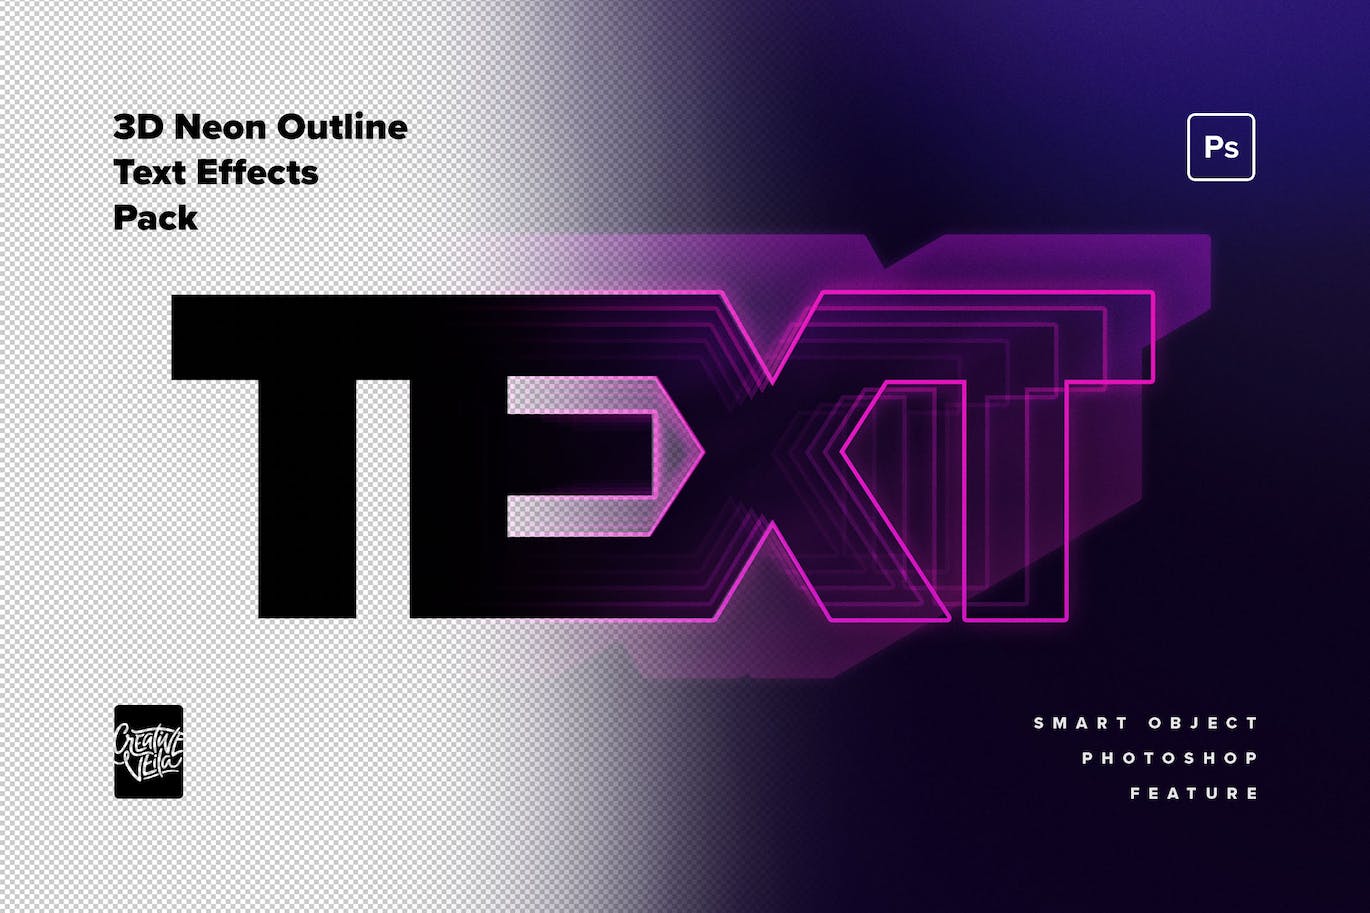 80年代复古未来主义3D霓虹灯文本效果 80s Retro-Futuristic 3D Neon Text Effect 插件预设 第2张